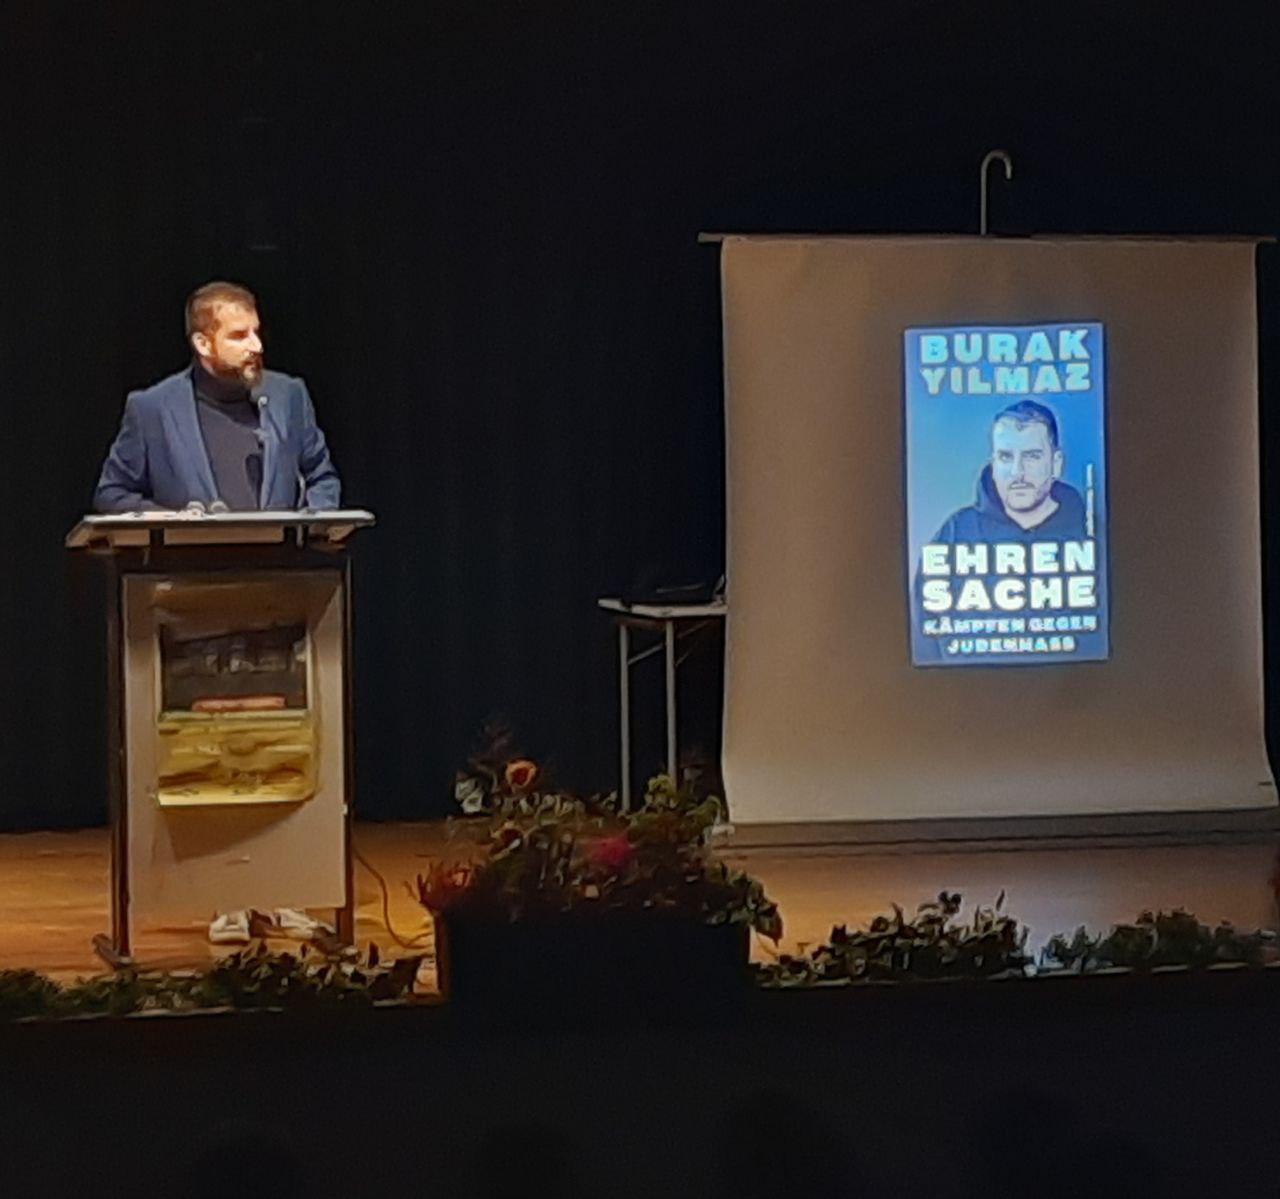 Die Interkulturelle Woche 2023: Burak Yilmaz liest am MCG aus seiner Publikation „Ehrensache – Kämpfen gegen Judenhass“